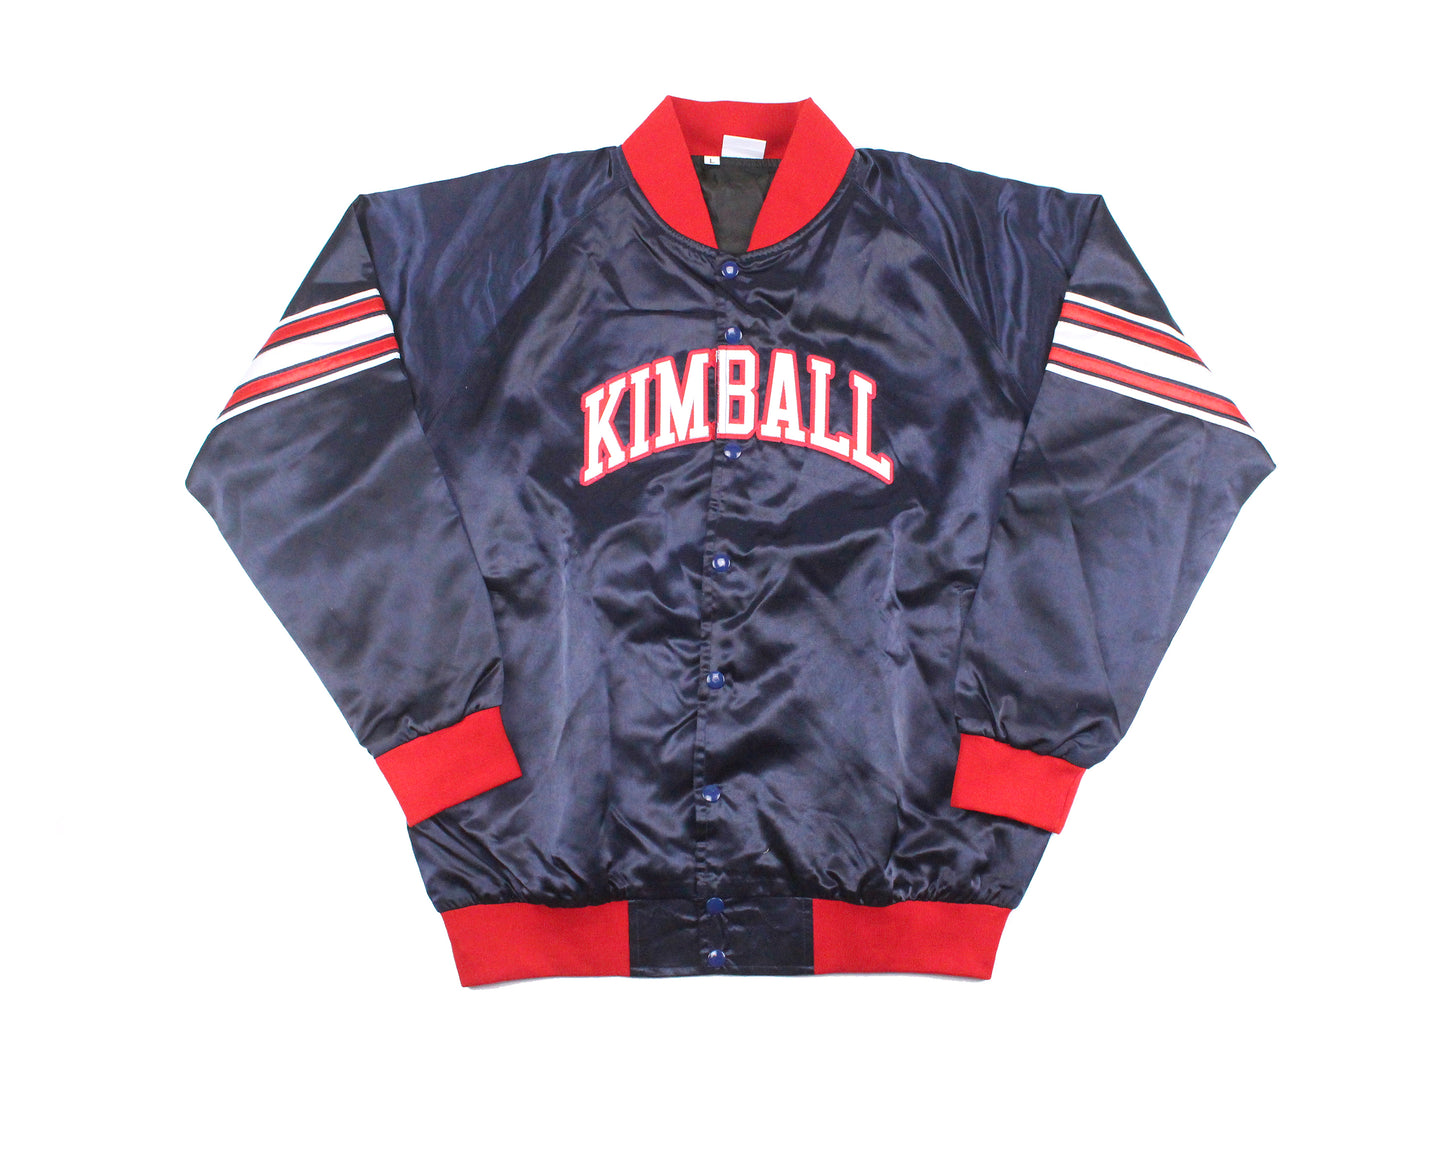 Kimball Knights Navy Jacket